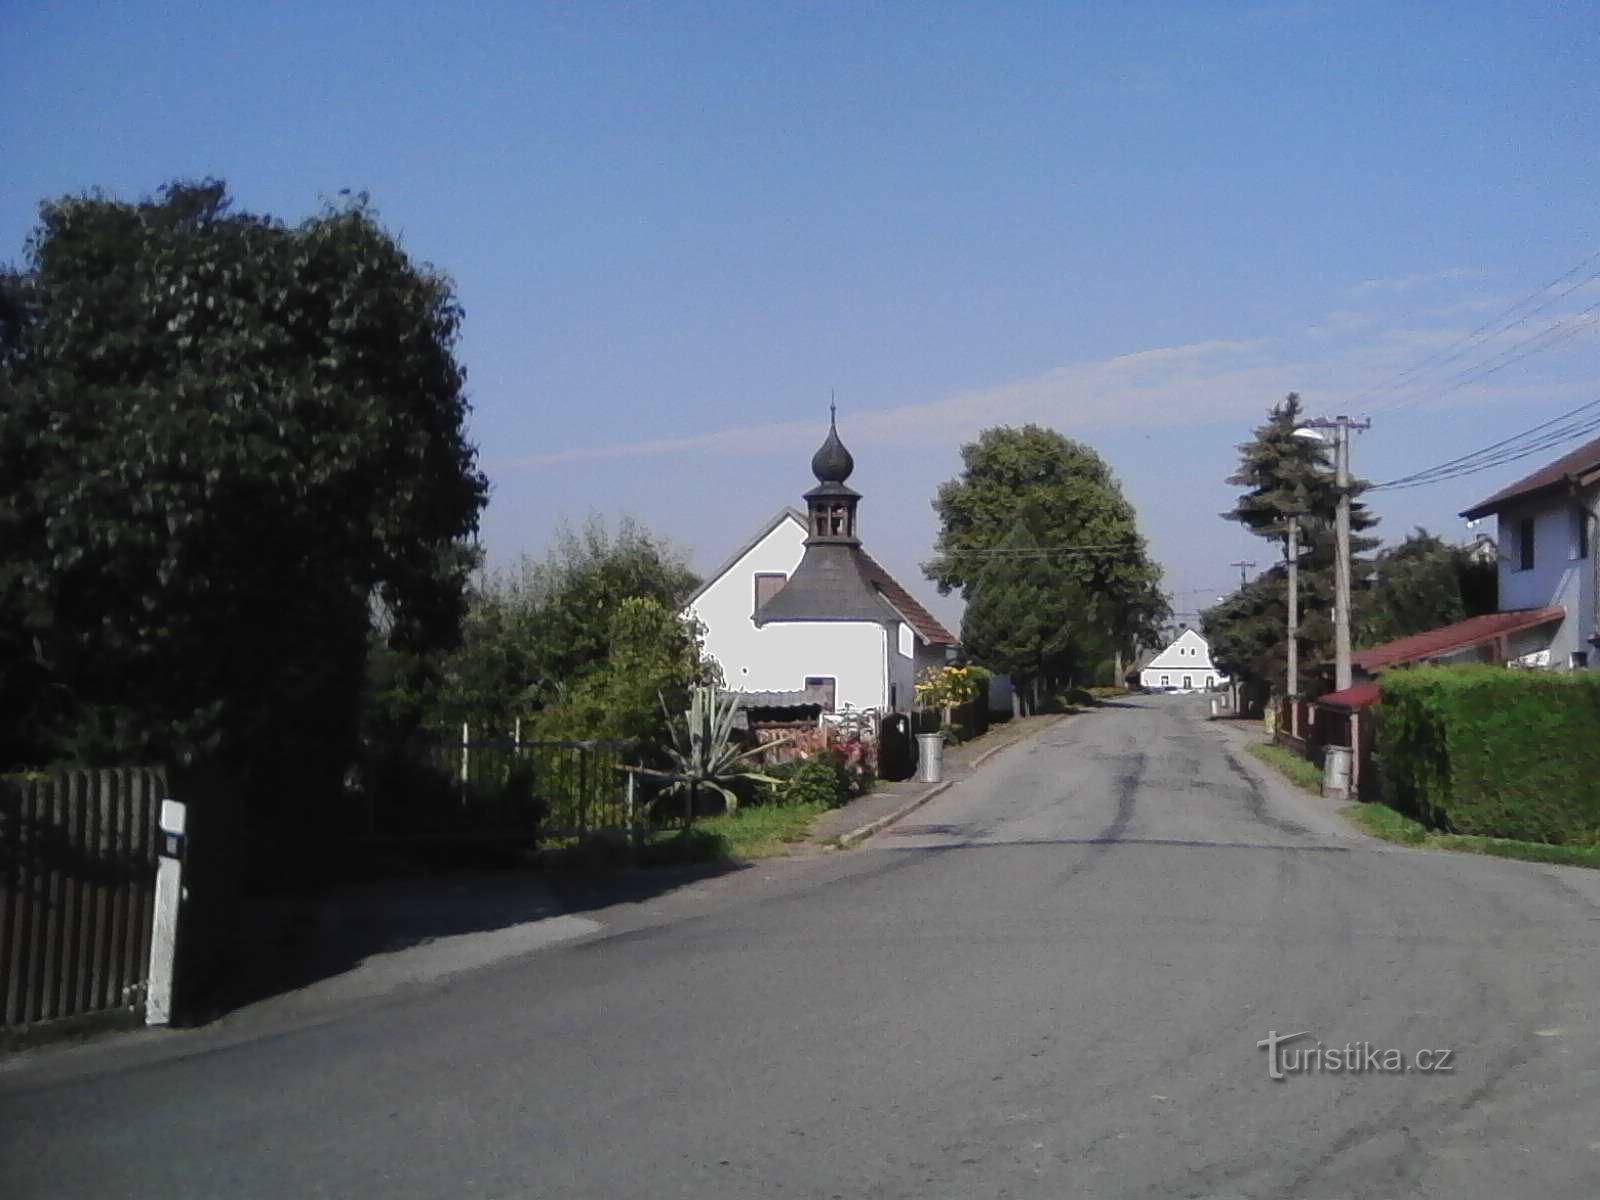 2. Capela na aldeia de Horní Horřice.